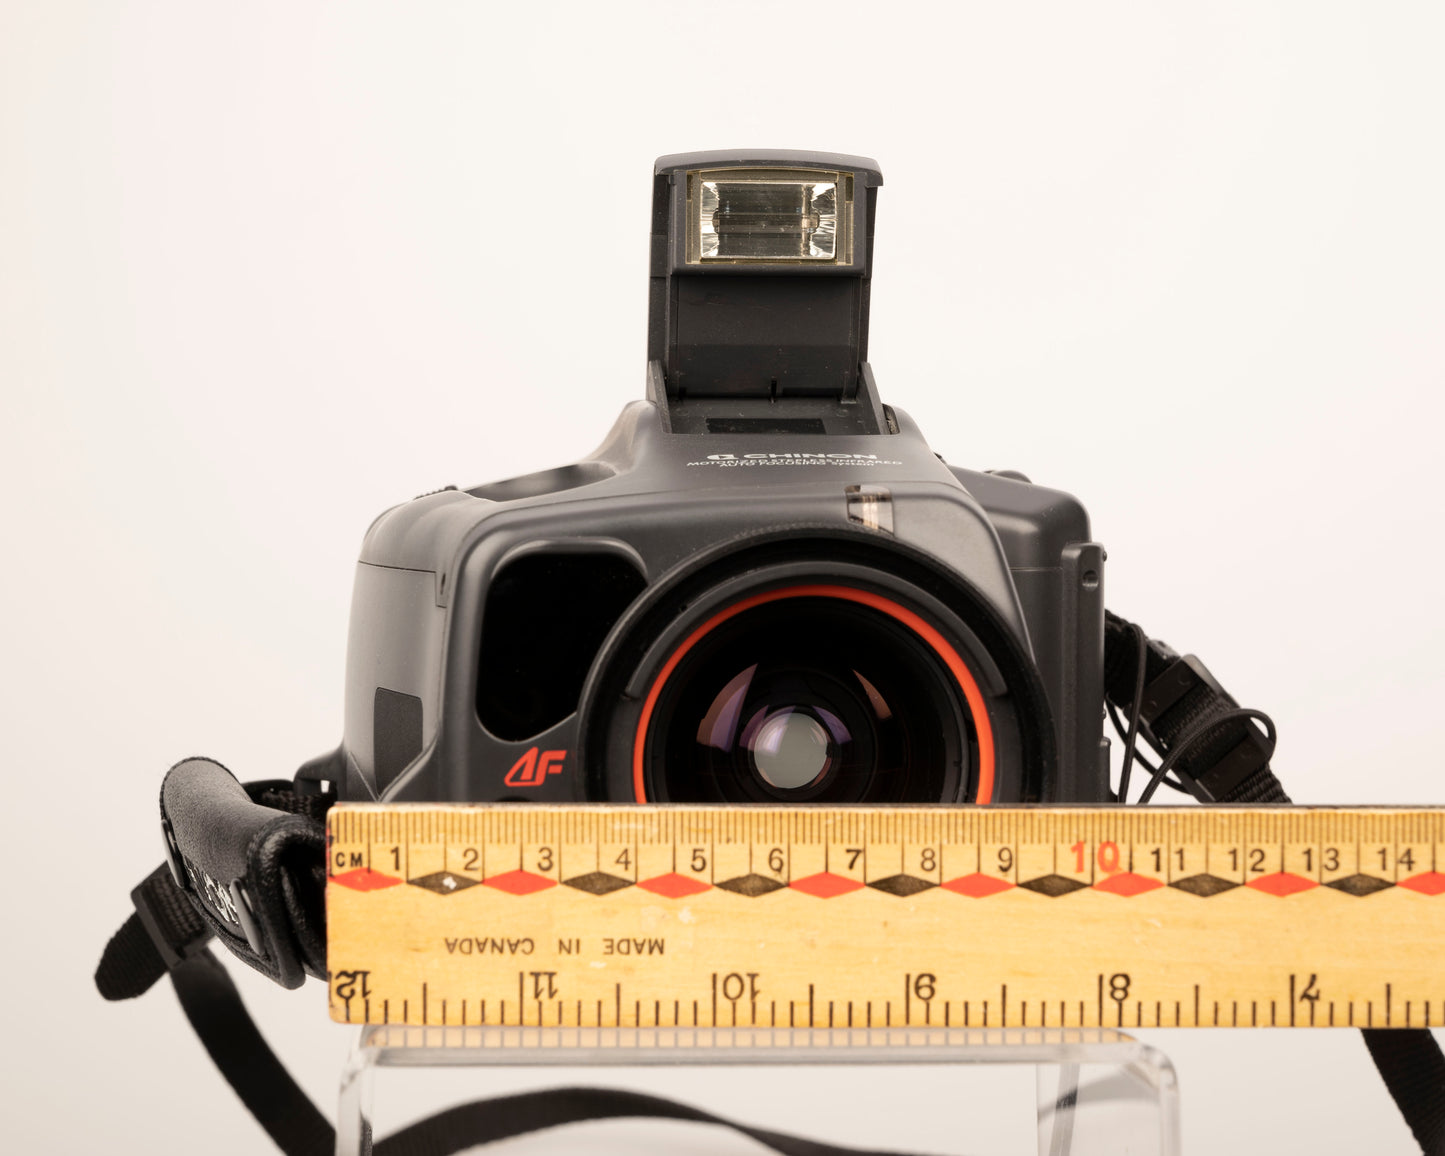 Chinon Genesis II 'bridge' 35mm film SLR avec objectif 35-80mm + mallette de transport + manuel